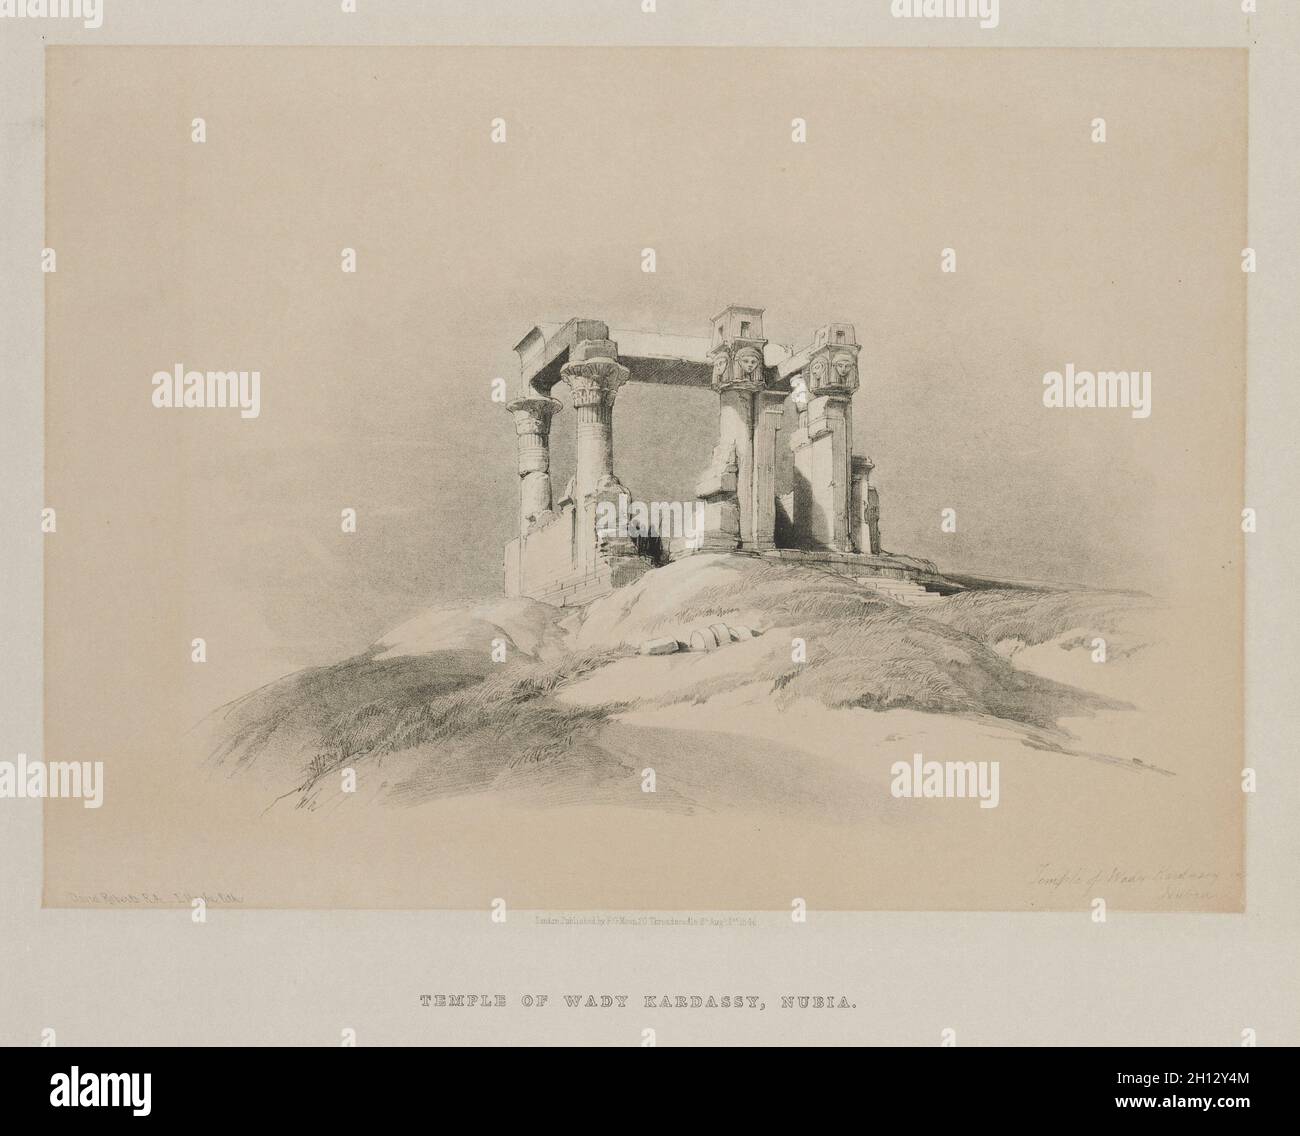 Ägypten und Nubien, Band I: Tempel von Wady Kardassy in Nubien, 1846. Louis Haghe (British, 1806-1885), F. G. Moon, 20 Threadneedle Street, London, Nach David Roberts (Scottish, 1796-1864). Farblithographie; Blatt: 36.1 x 42.8 cm (14 3/16 x 16 7/8 Zoll); Bild: 25.1 x 34.9 cm (9 7/8 x 13 3/4 Zoll). Stockfoto